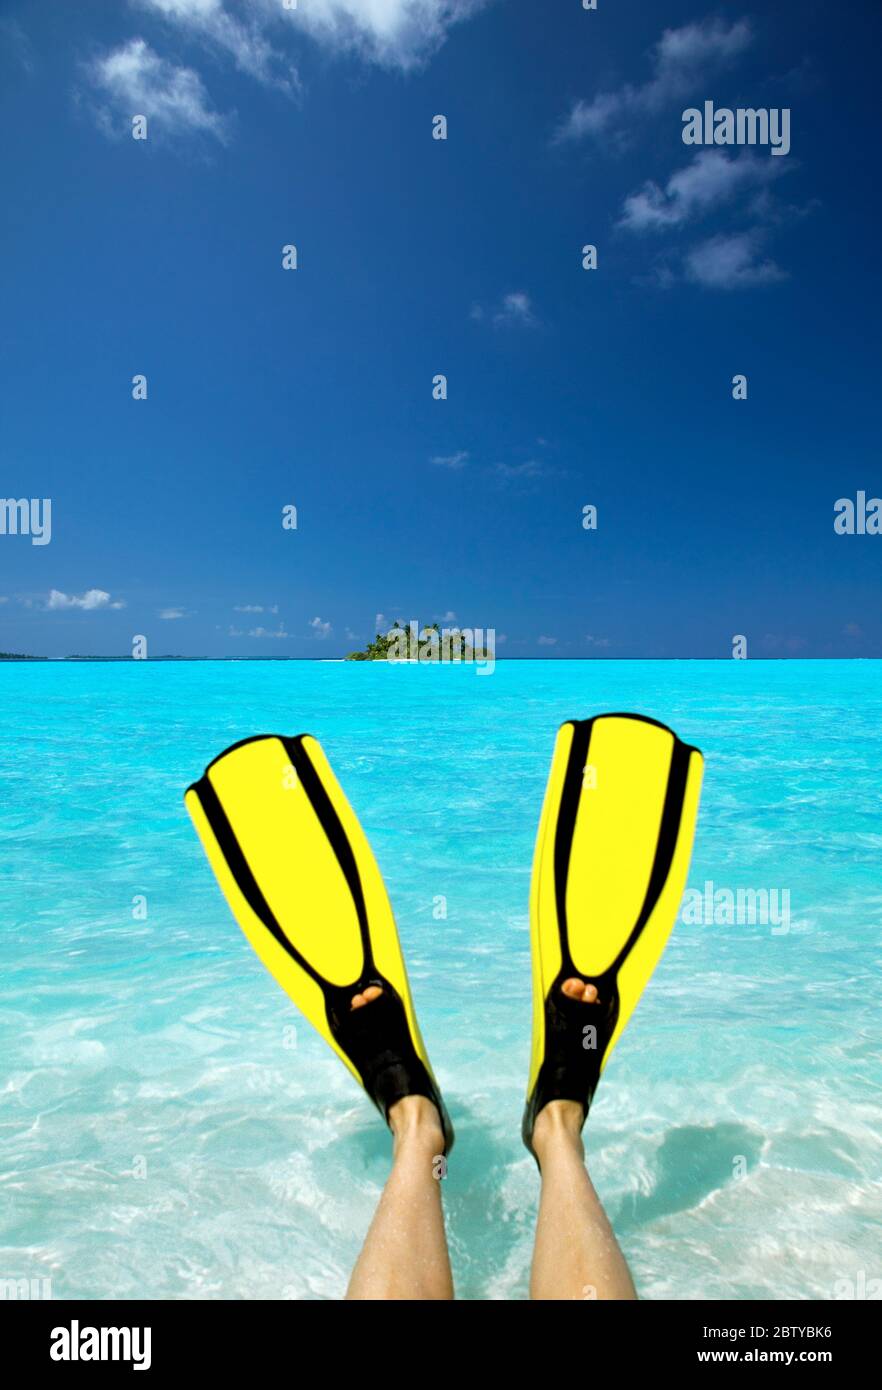 Île tropicale et personne portant des flippers assis en mer, Maldives, Océan Indien, Asie Banque D'Images